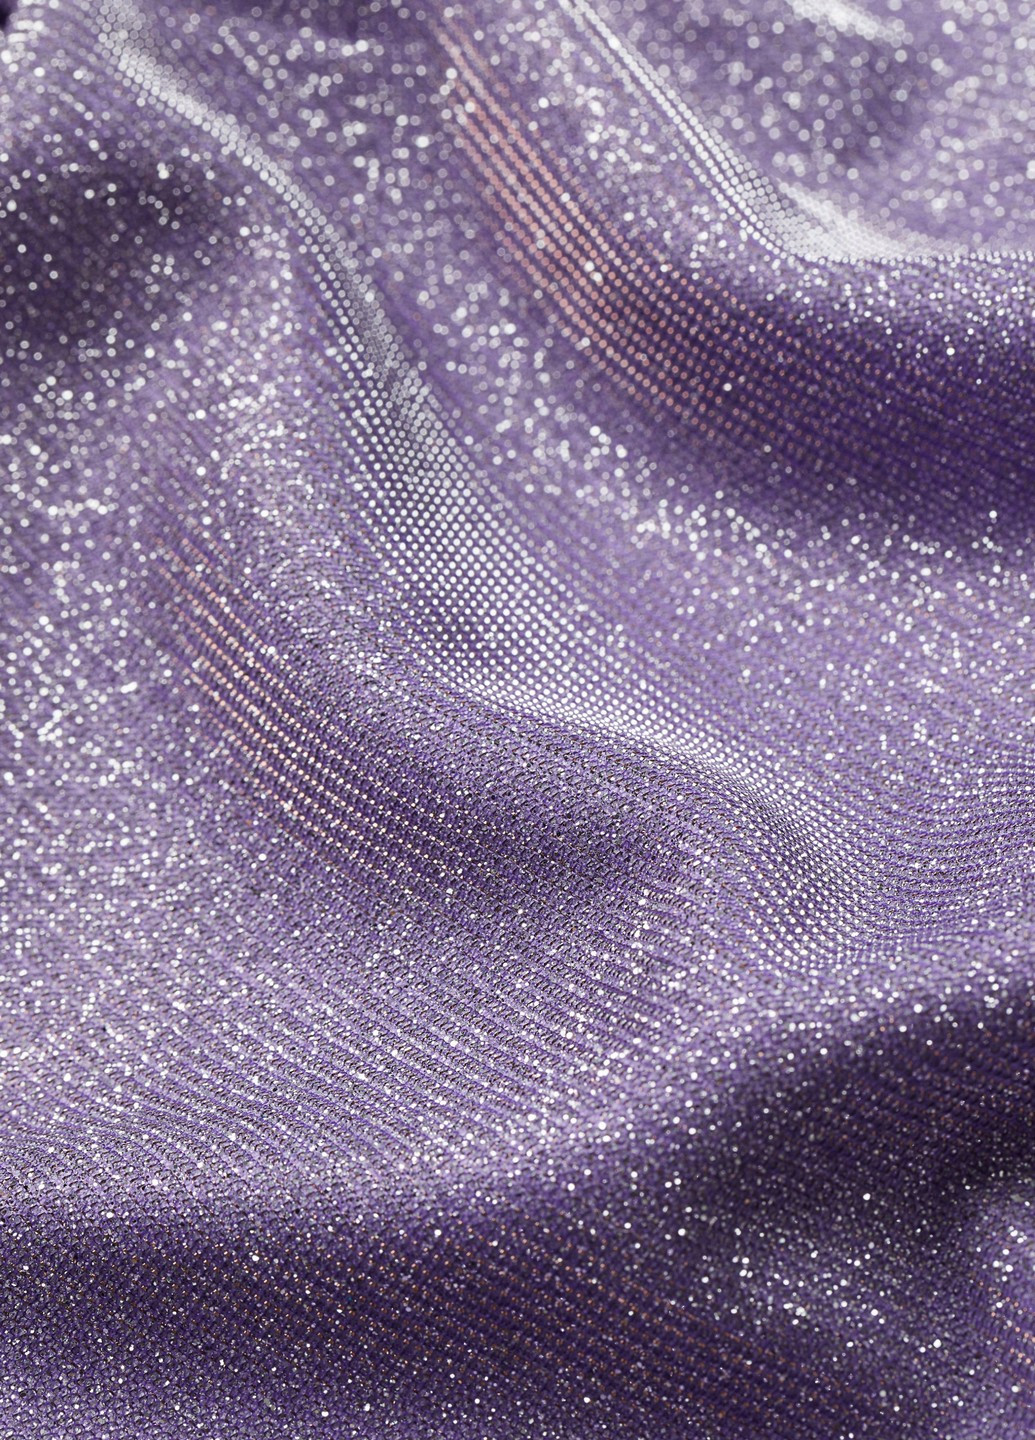 Фиолетовое вечернее платье H&M однотонное